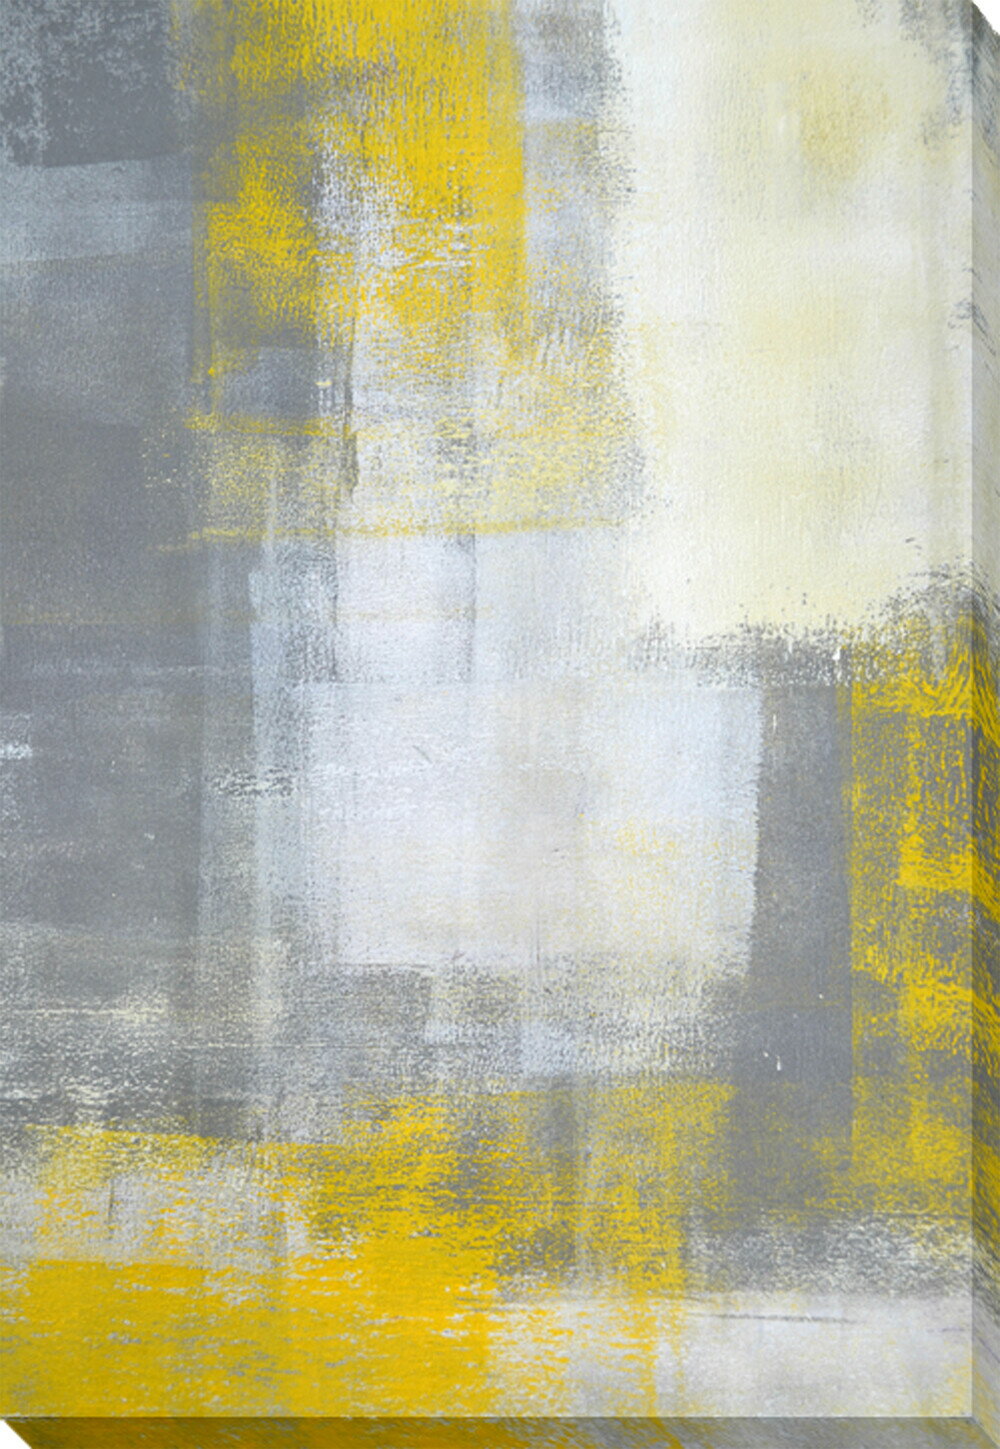 キャンバスパネル Art Panel T30 Galler Grey and Yellow iap-52109 送料無料